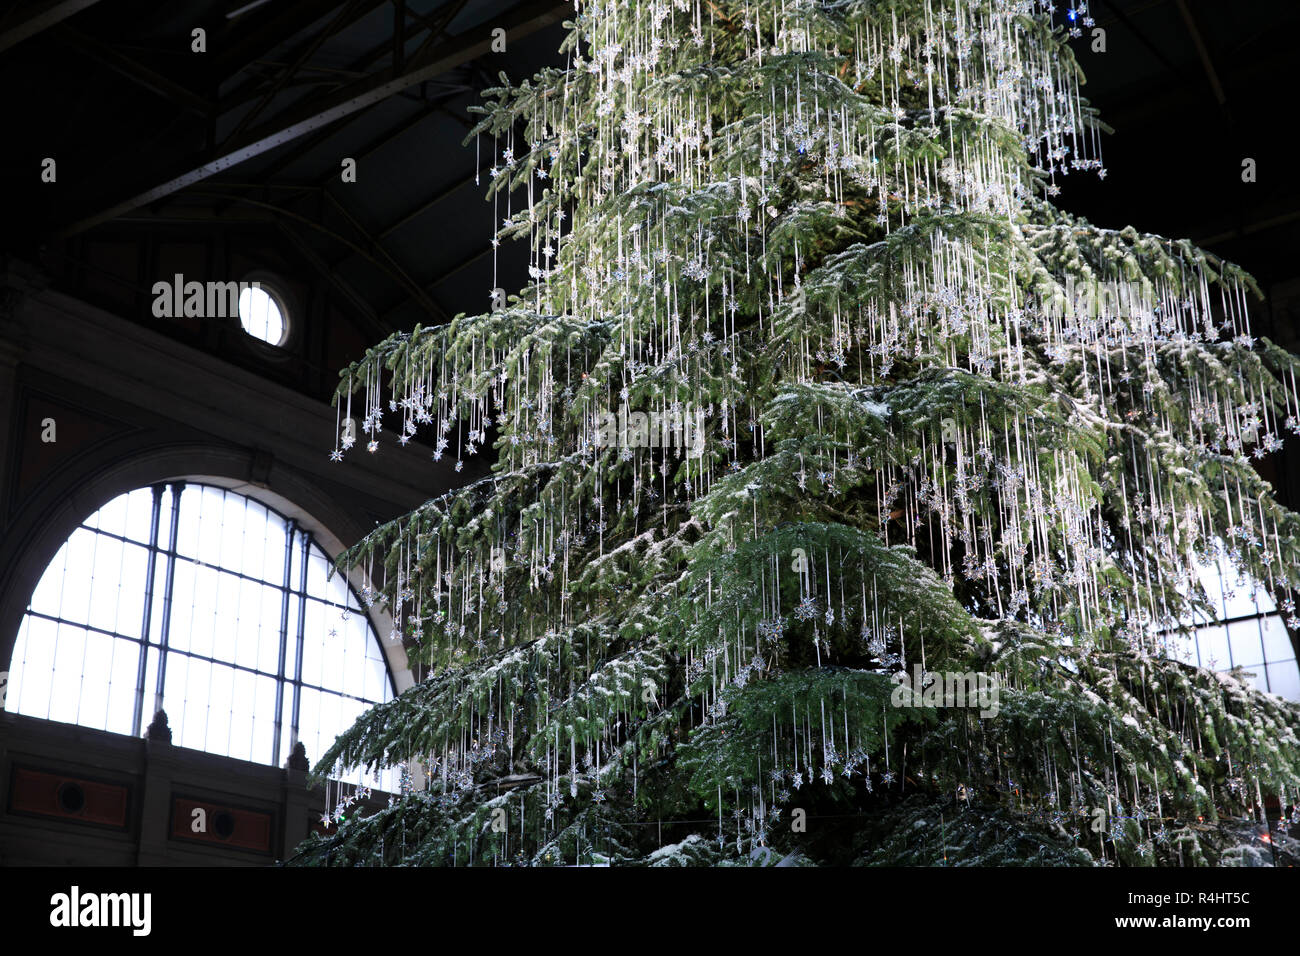 Ein riesiger Weihnachtsbaum, drapiert mit Swarovski Schmuck, die  Hauptattraktion des Zürcher Weihnachtsmarkt auf der Bahnhof Zürich, Zürich,  Schweiz, Eur Stockfotografie - Alamy